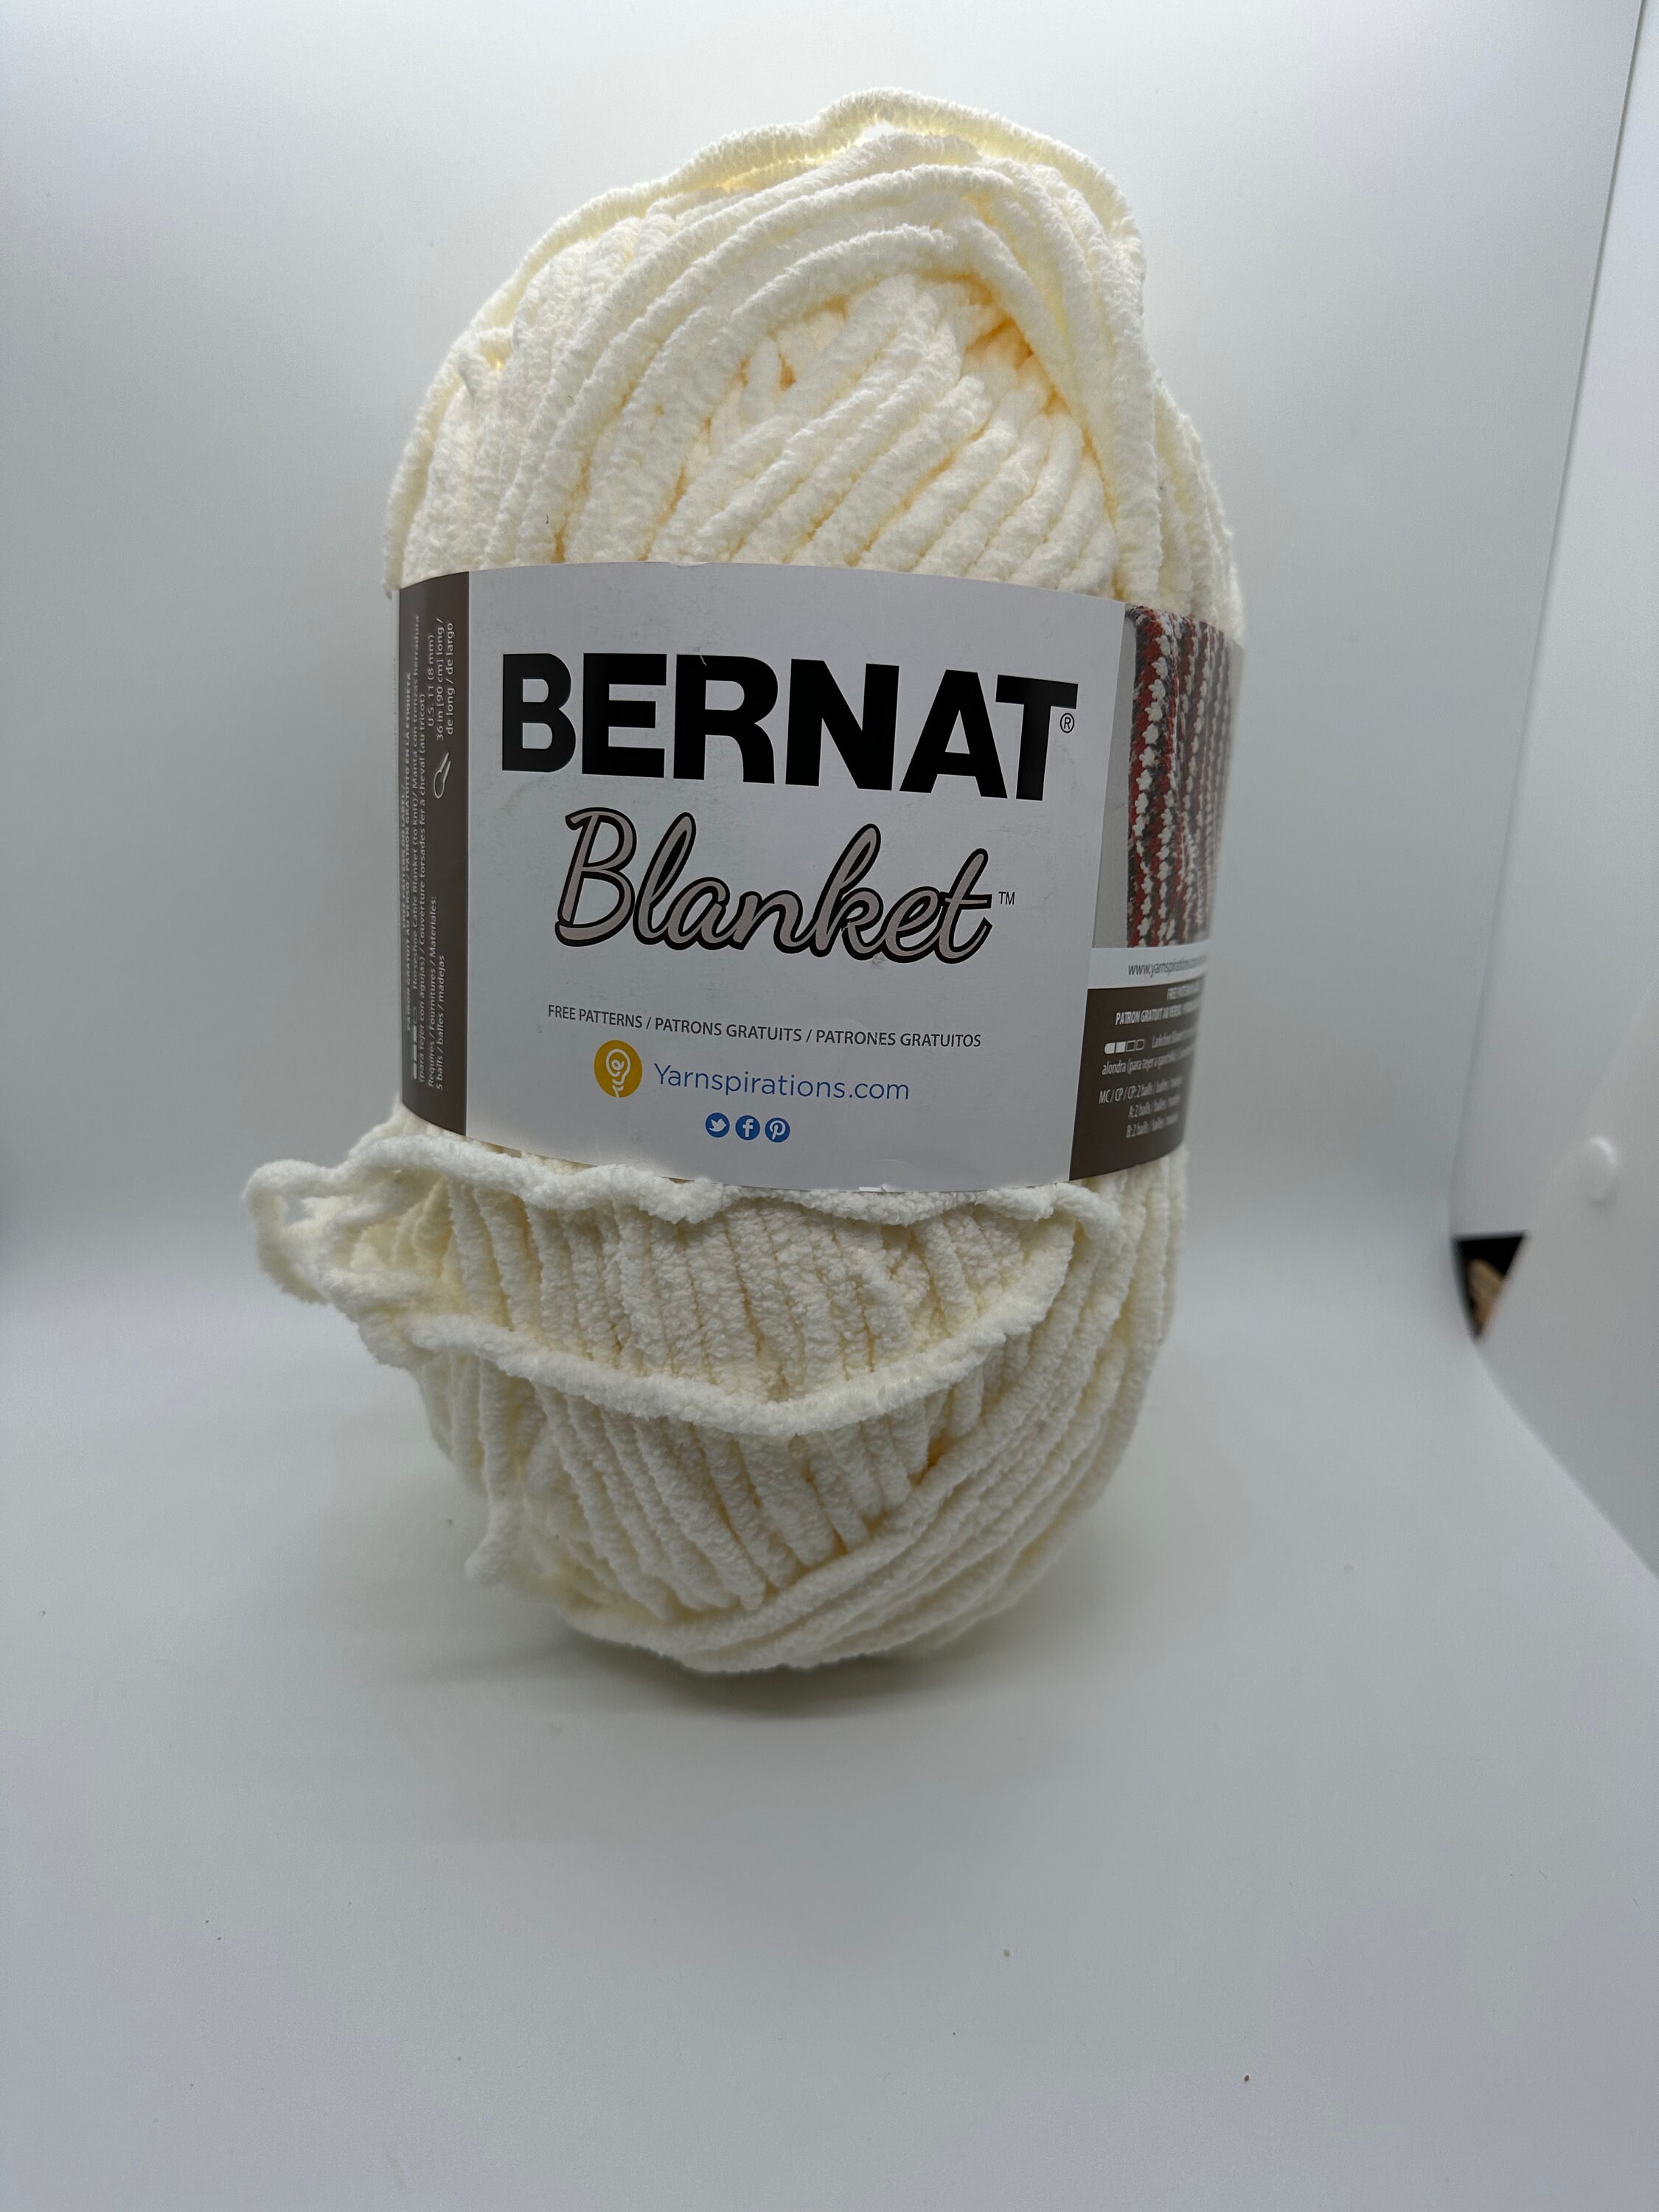 (Pack of 2) Bernat Forever Fleece Yarn-Smoke